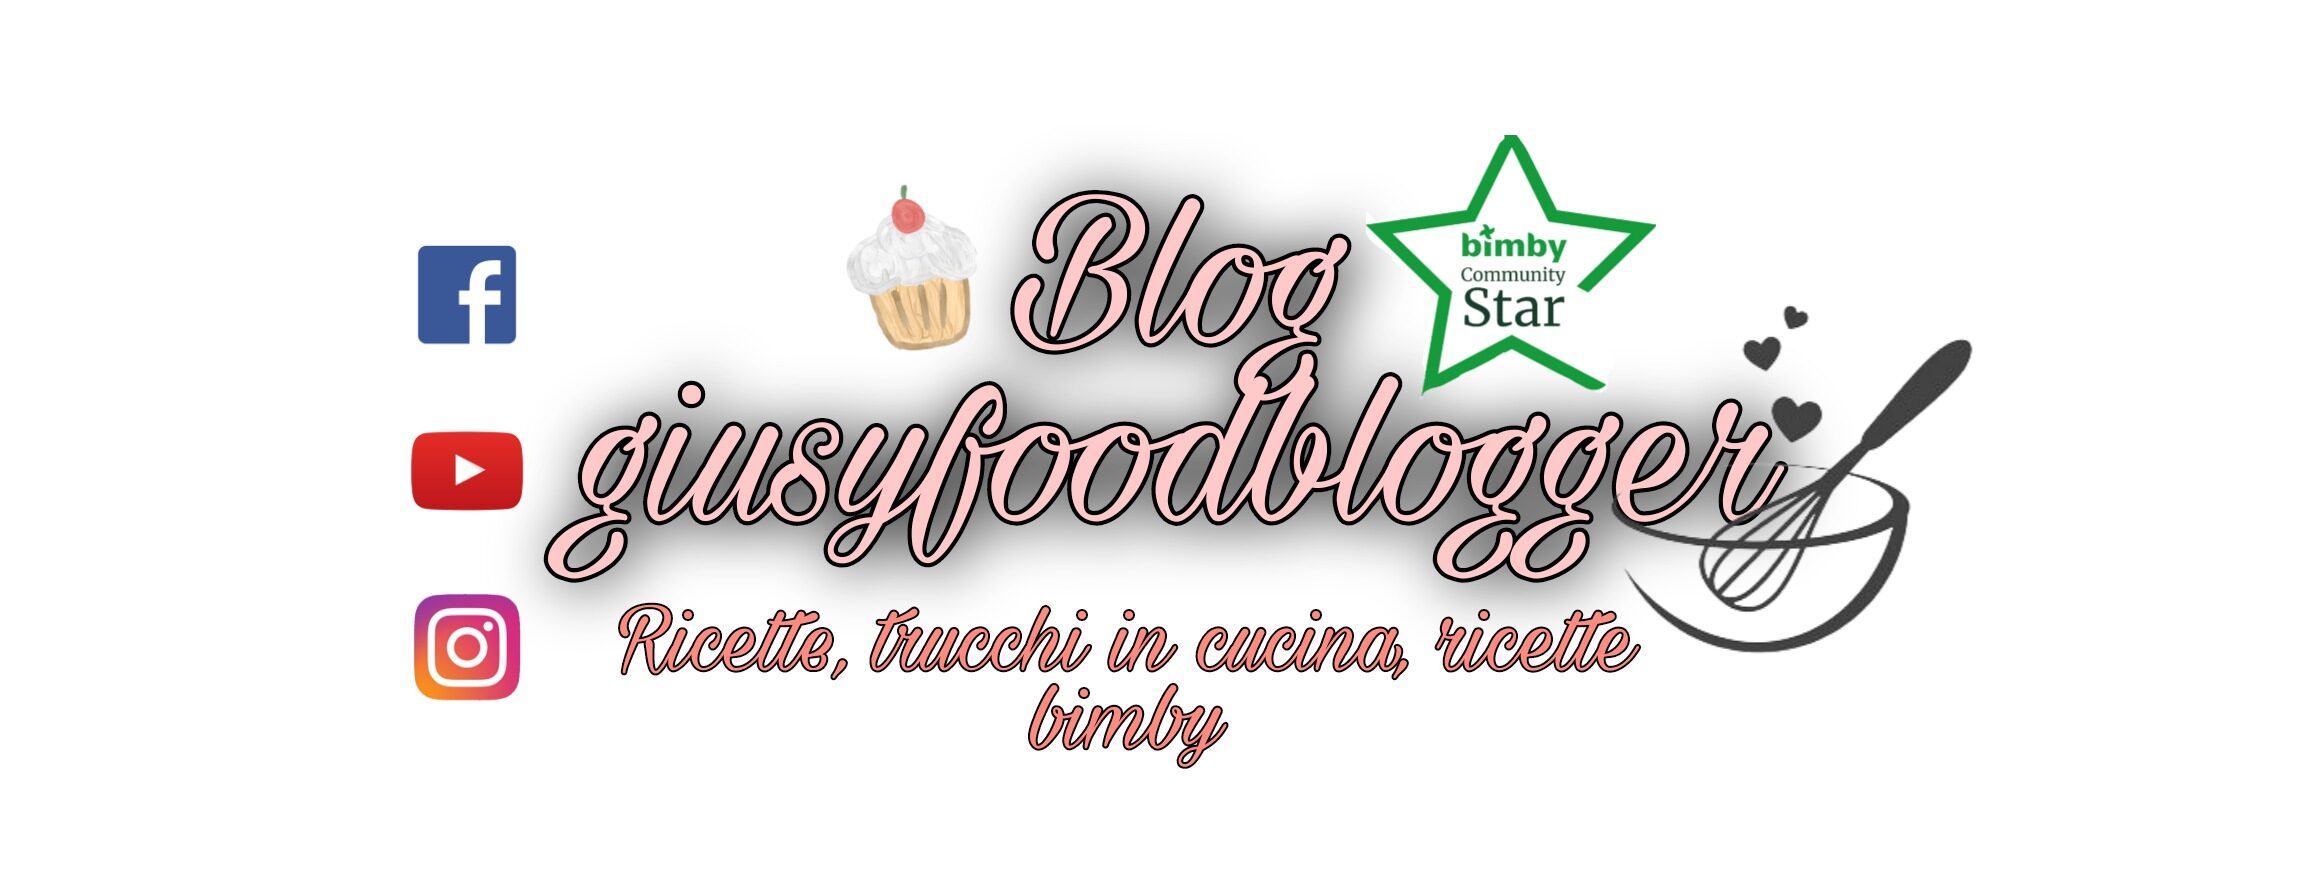 Blog di giusyfoodblogger